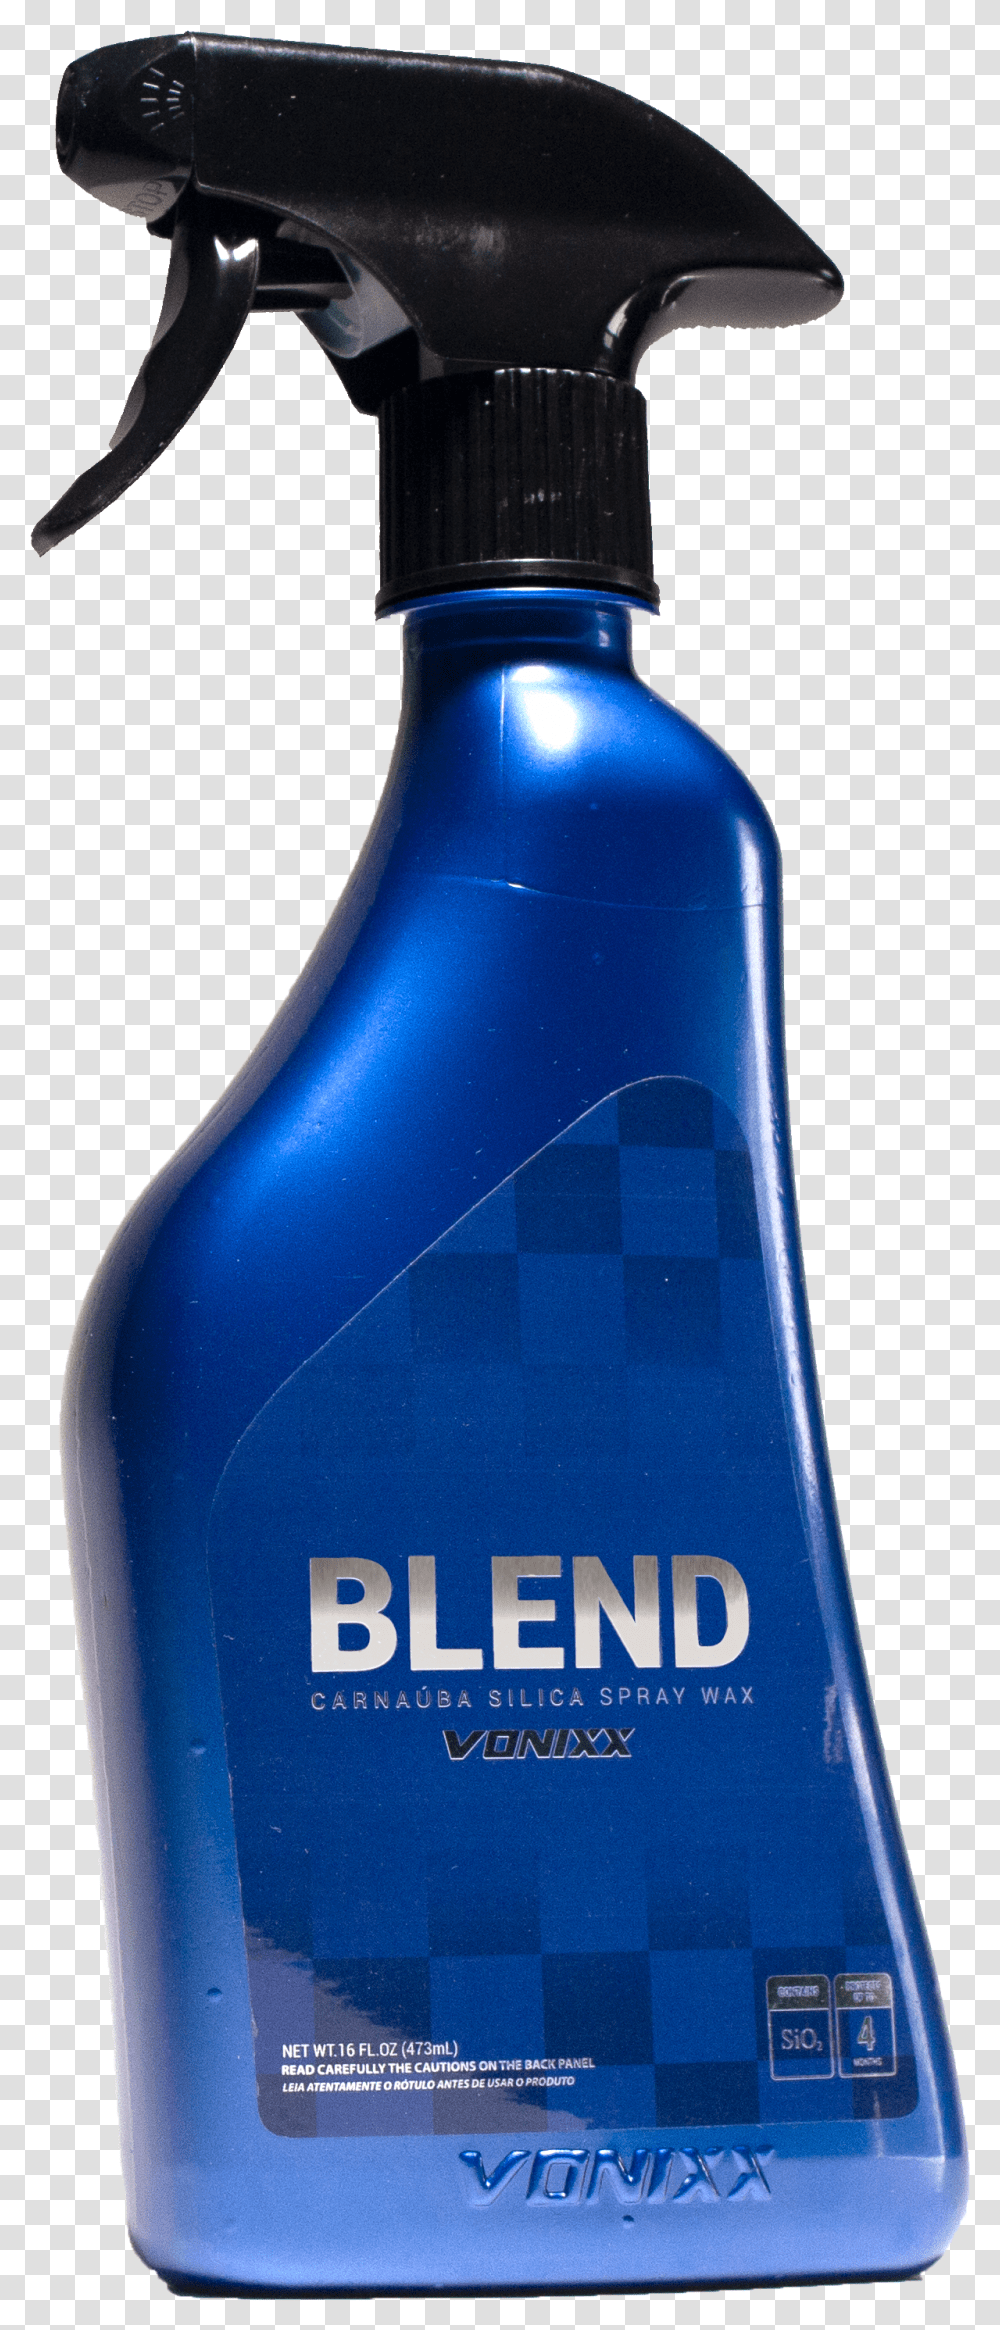 Blend Spray Silica Paste Wax Vonixx Blend Carnauba Silica Spray Wax, Bottle, Hammer, Tool, Beverage Transparent Png